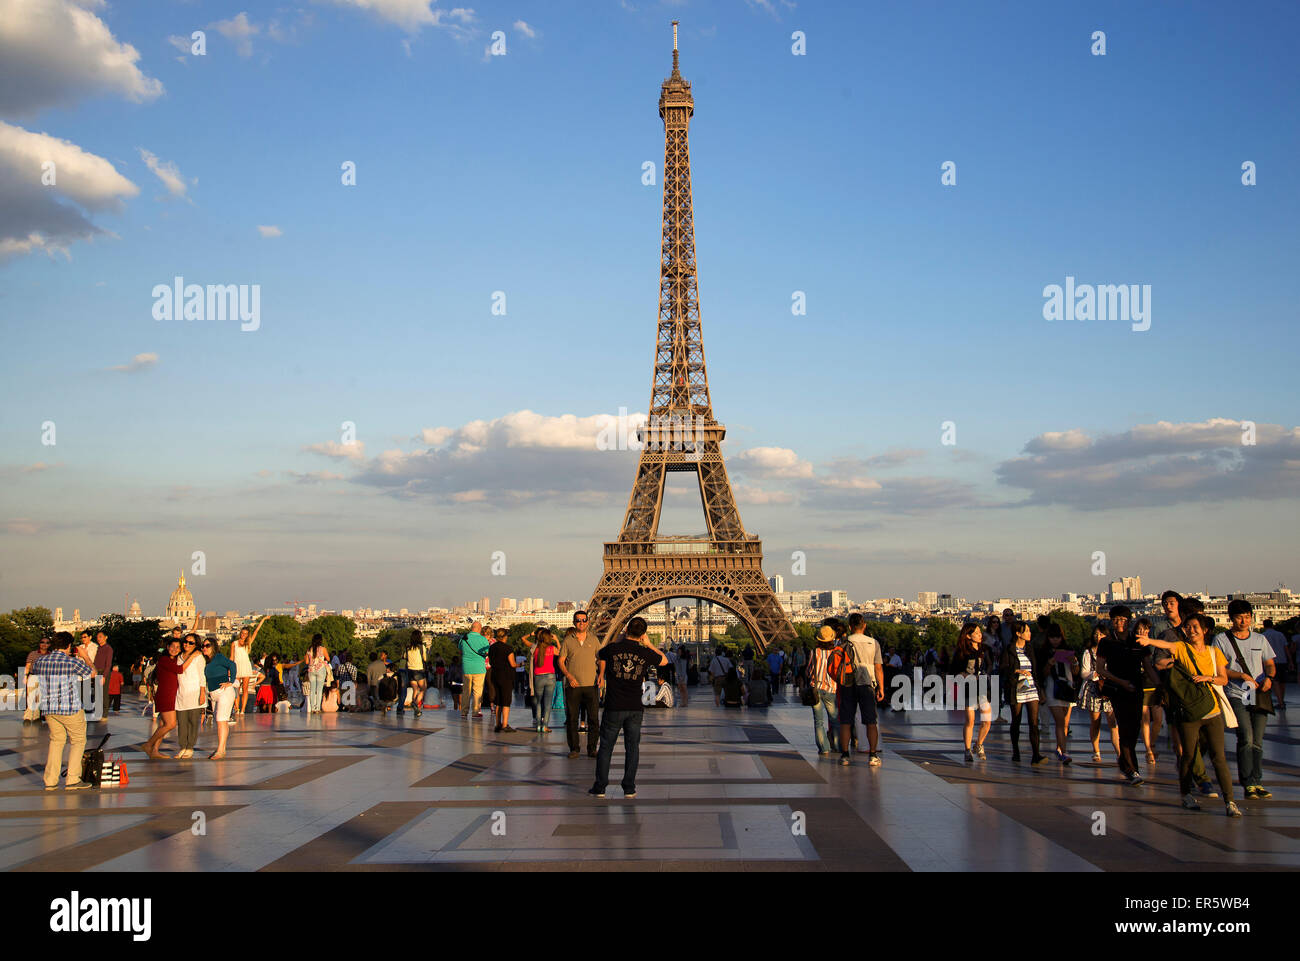 Les touristes près de la Tour Eiffel, Paris, France, Europe Banque D'Images